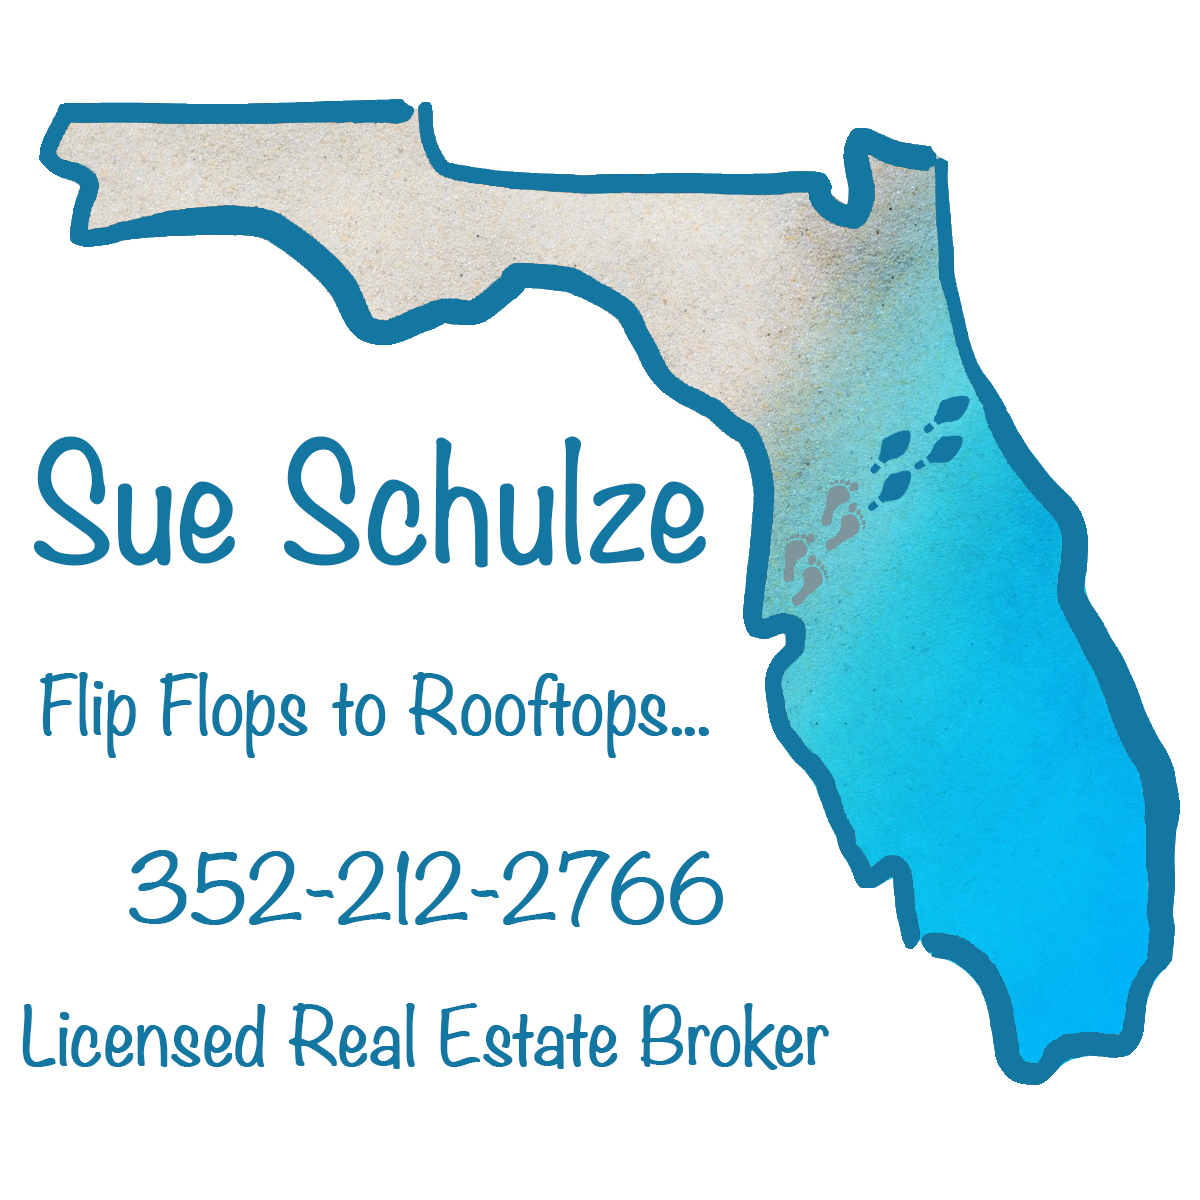 Sue Schulze Florida Real Estate Broker